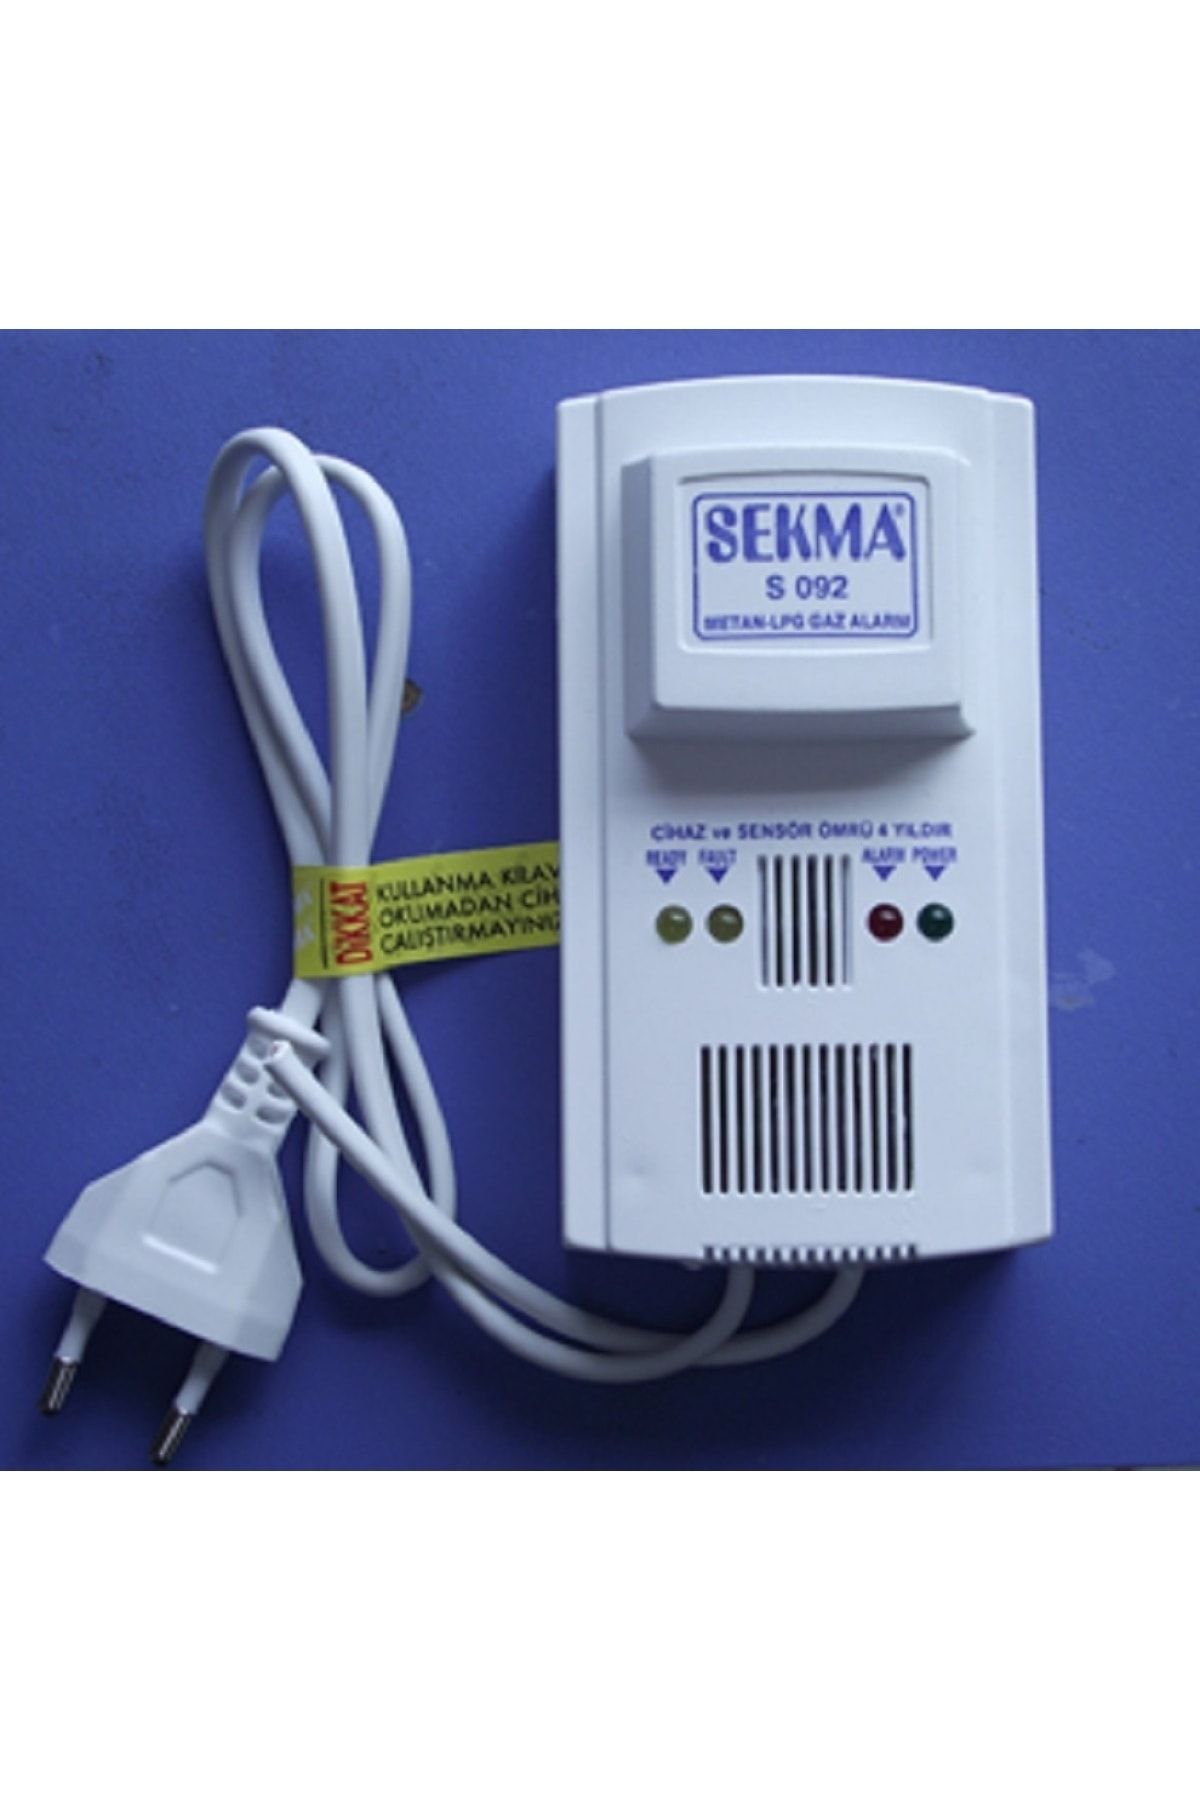 SEKMA S-092 Doğalgaz Alarm Dedektörü Gaz Alarm Cihazı Lpg Alarm Uyandırıcı